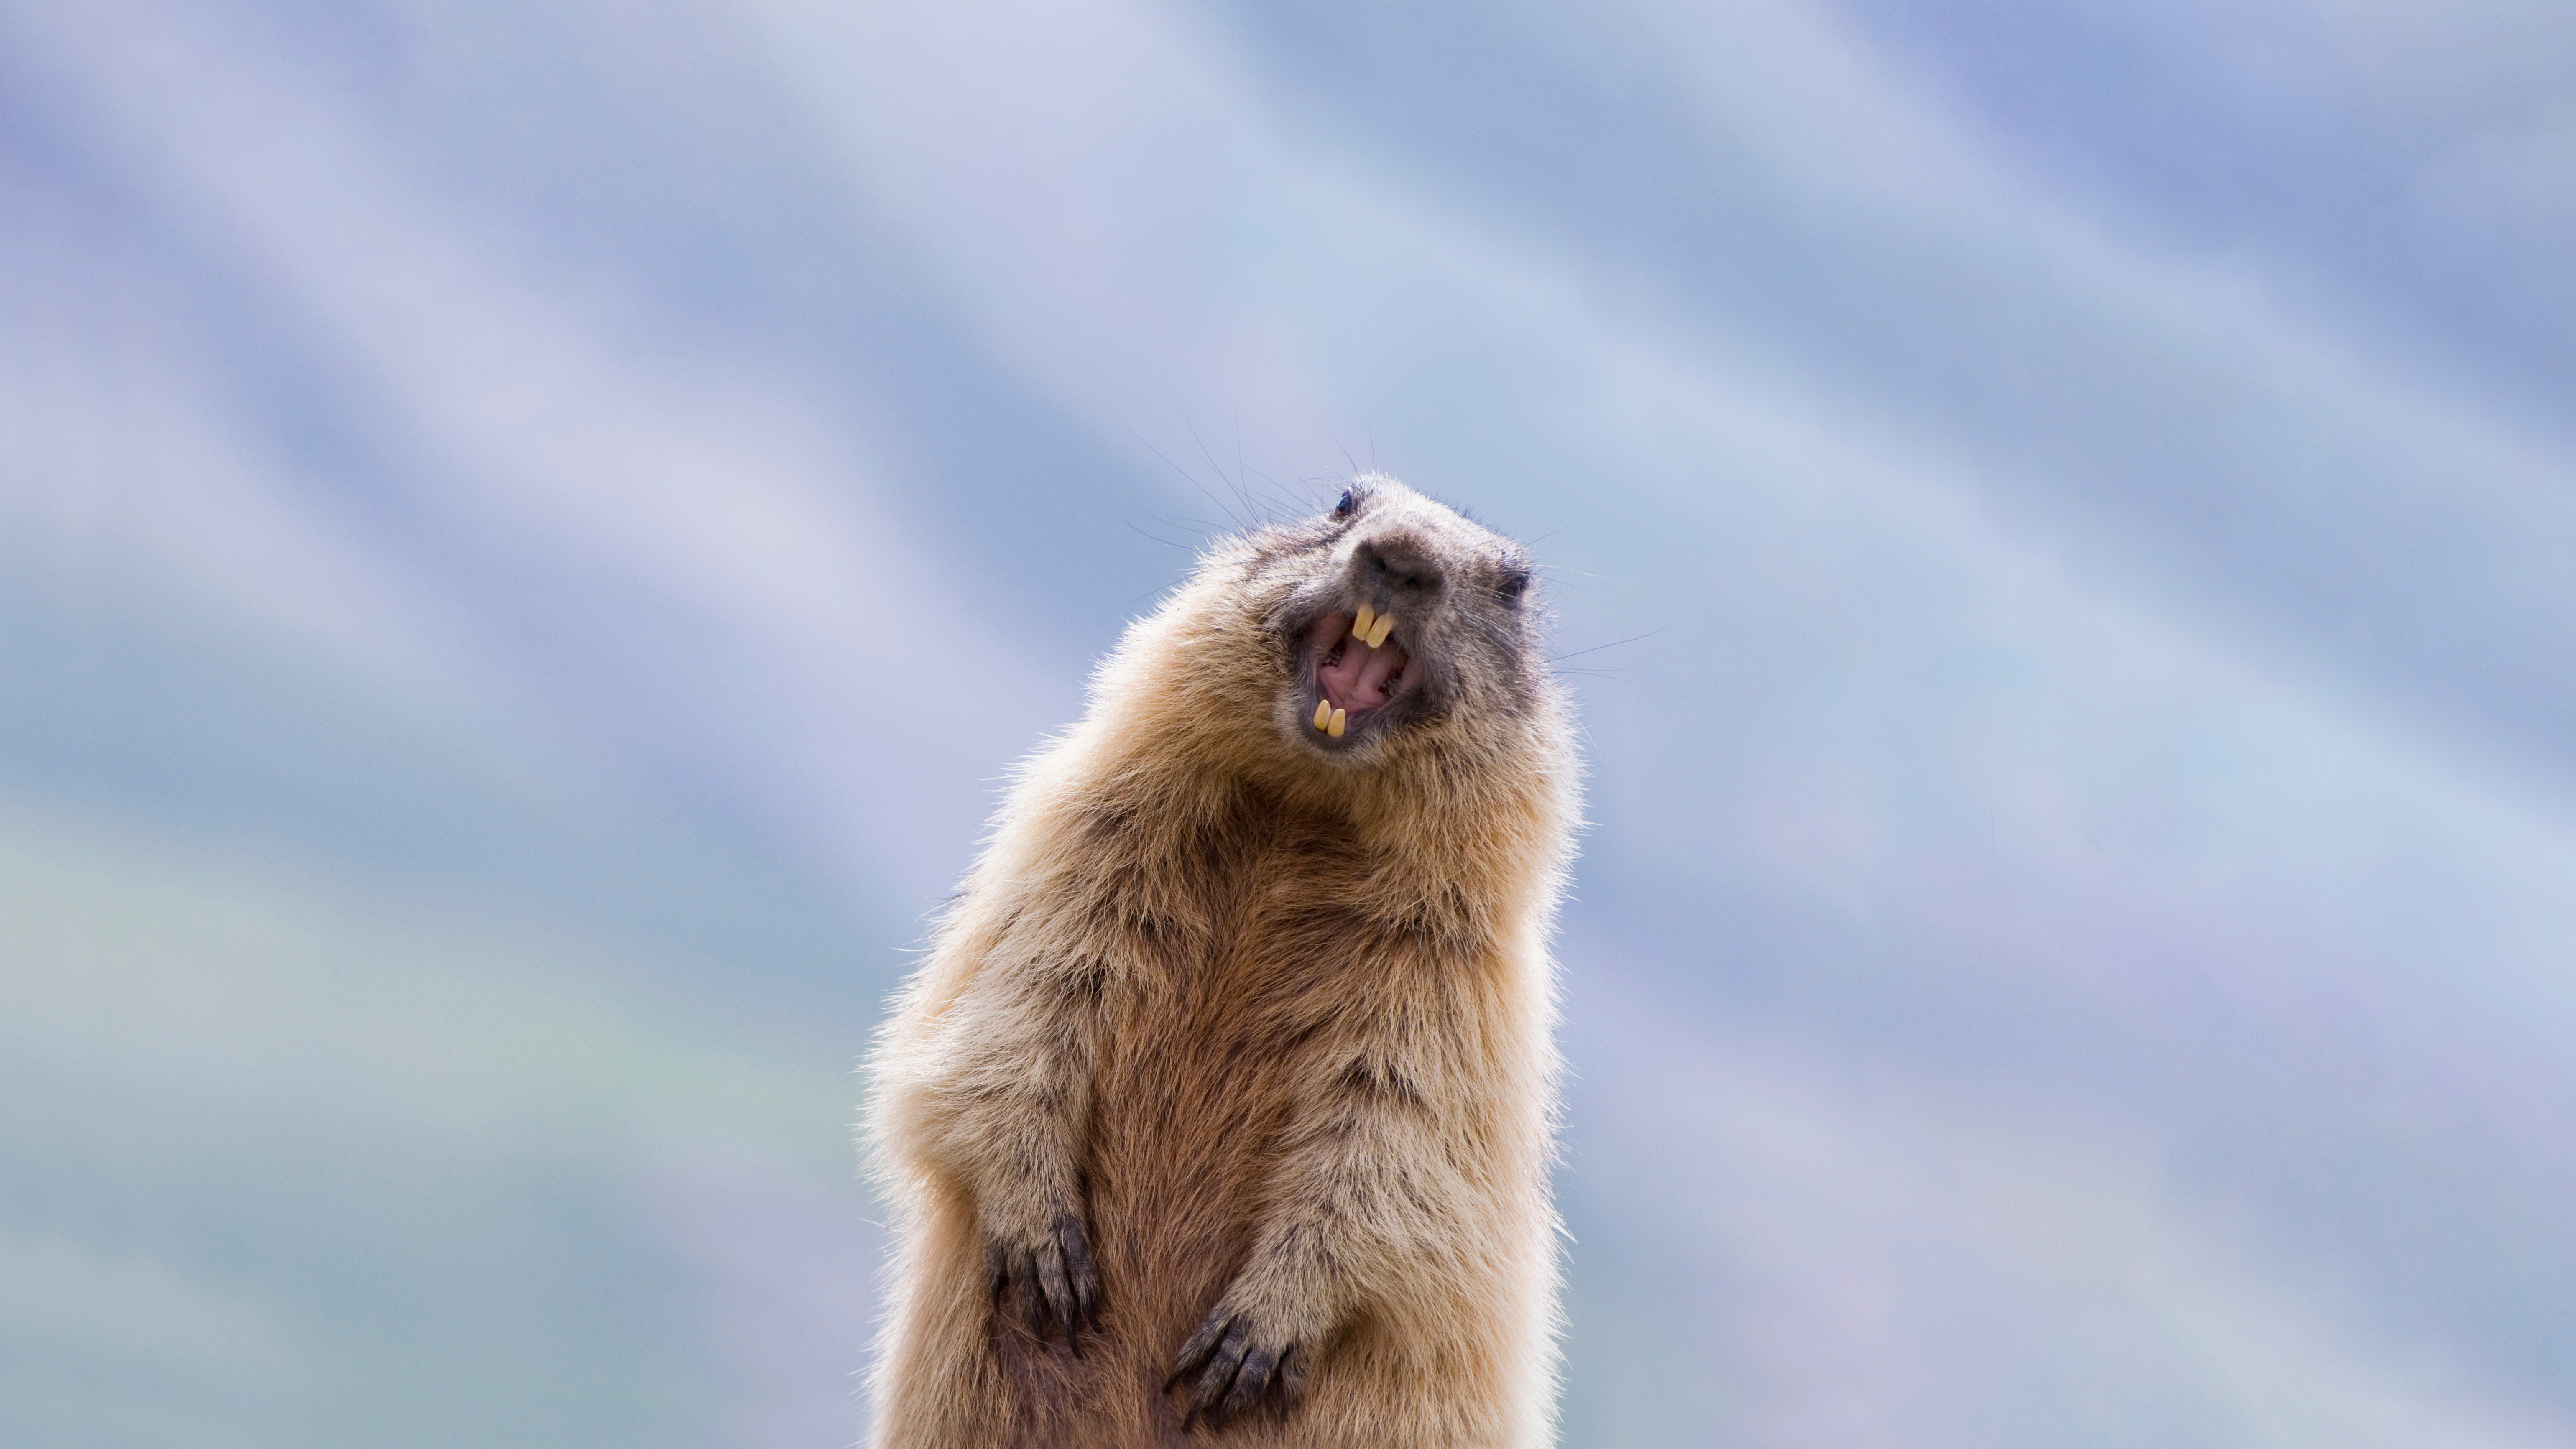 Alpine marmot in Hohe Tauern National Park, Austria by Misja Smits